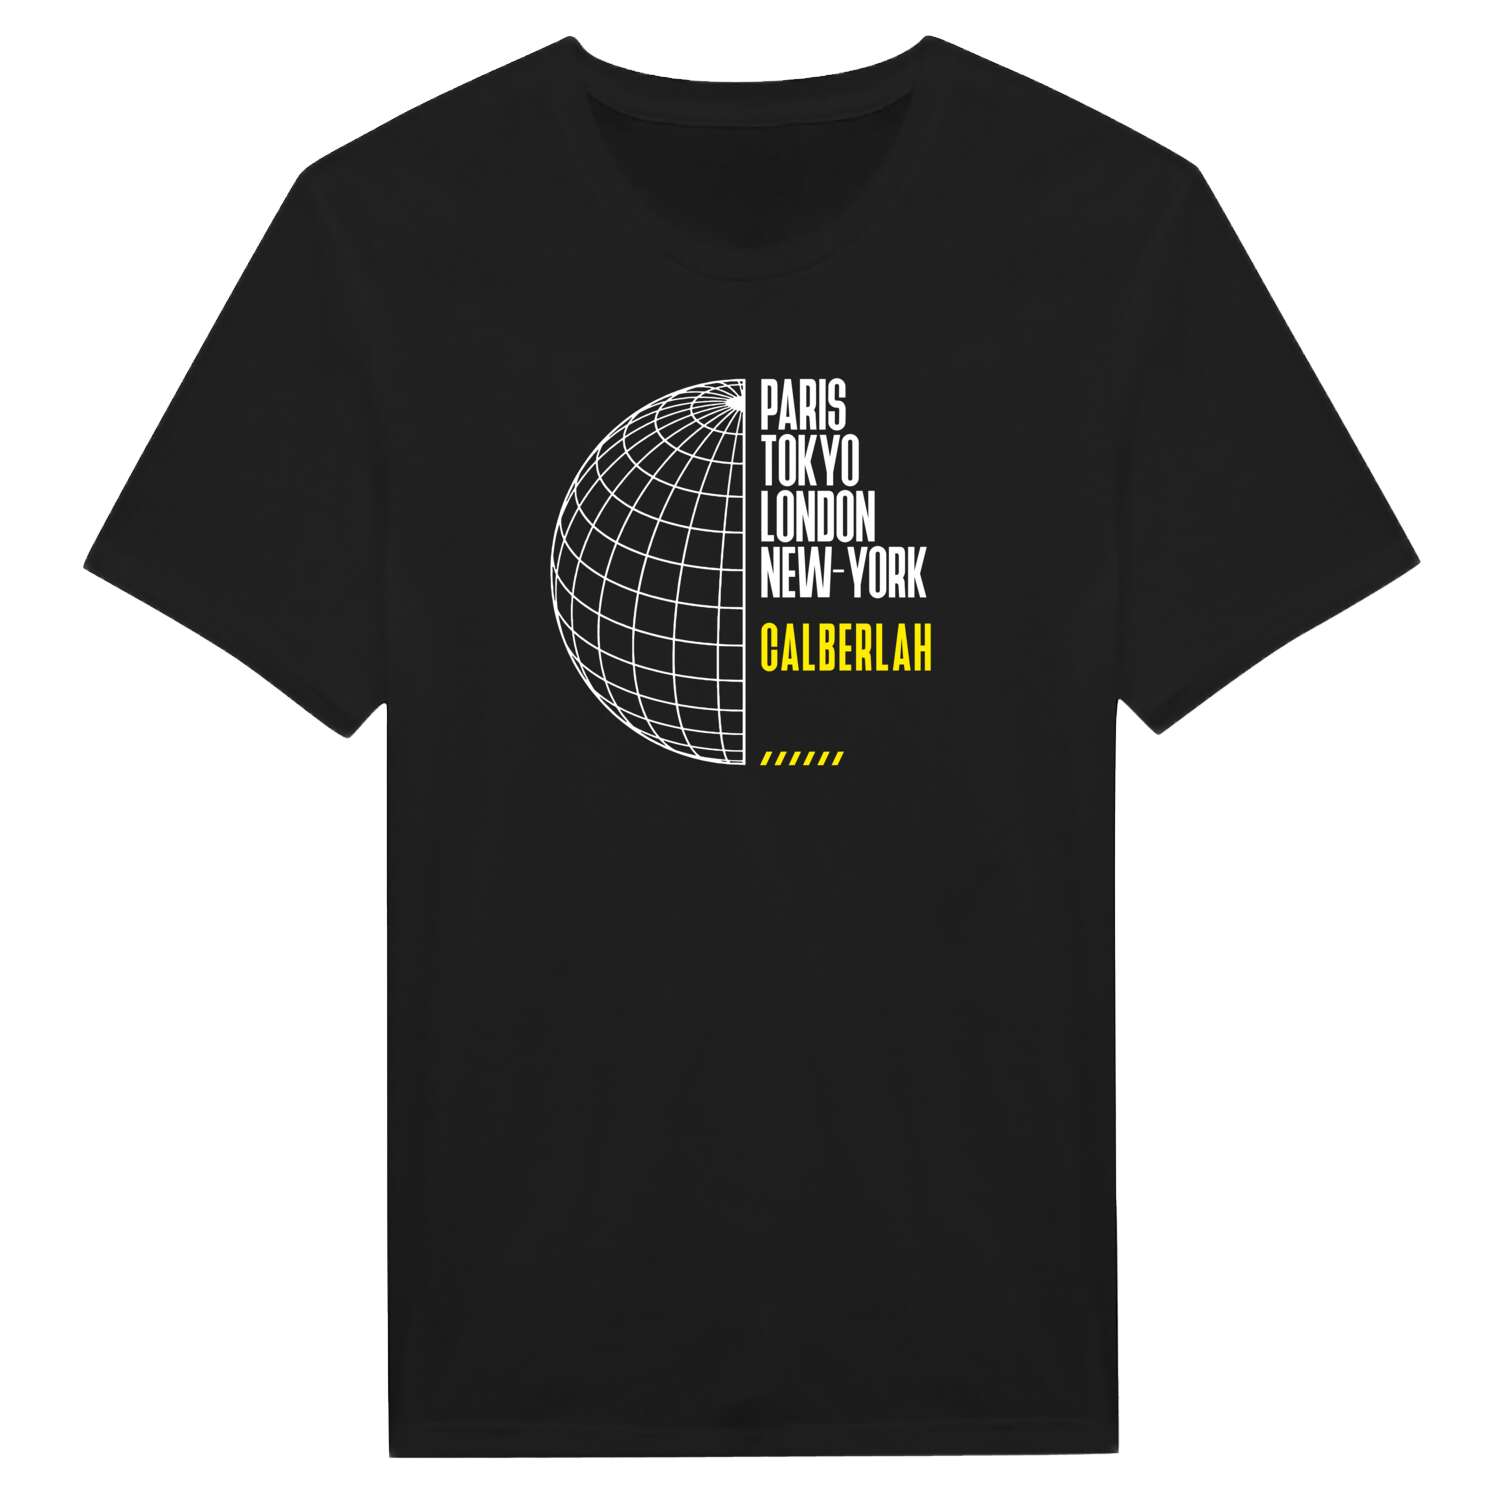 Calberlah T-Shirt »Paris Tokyo London«